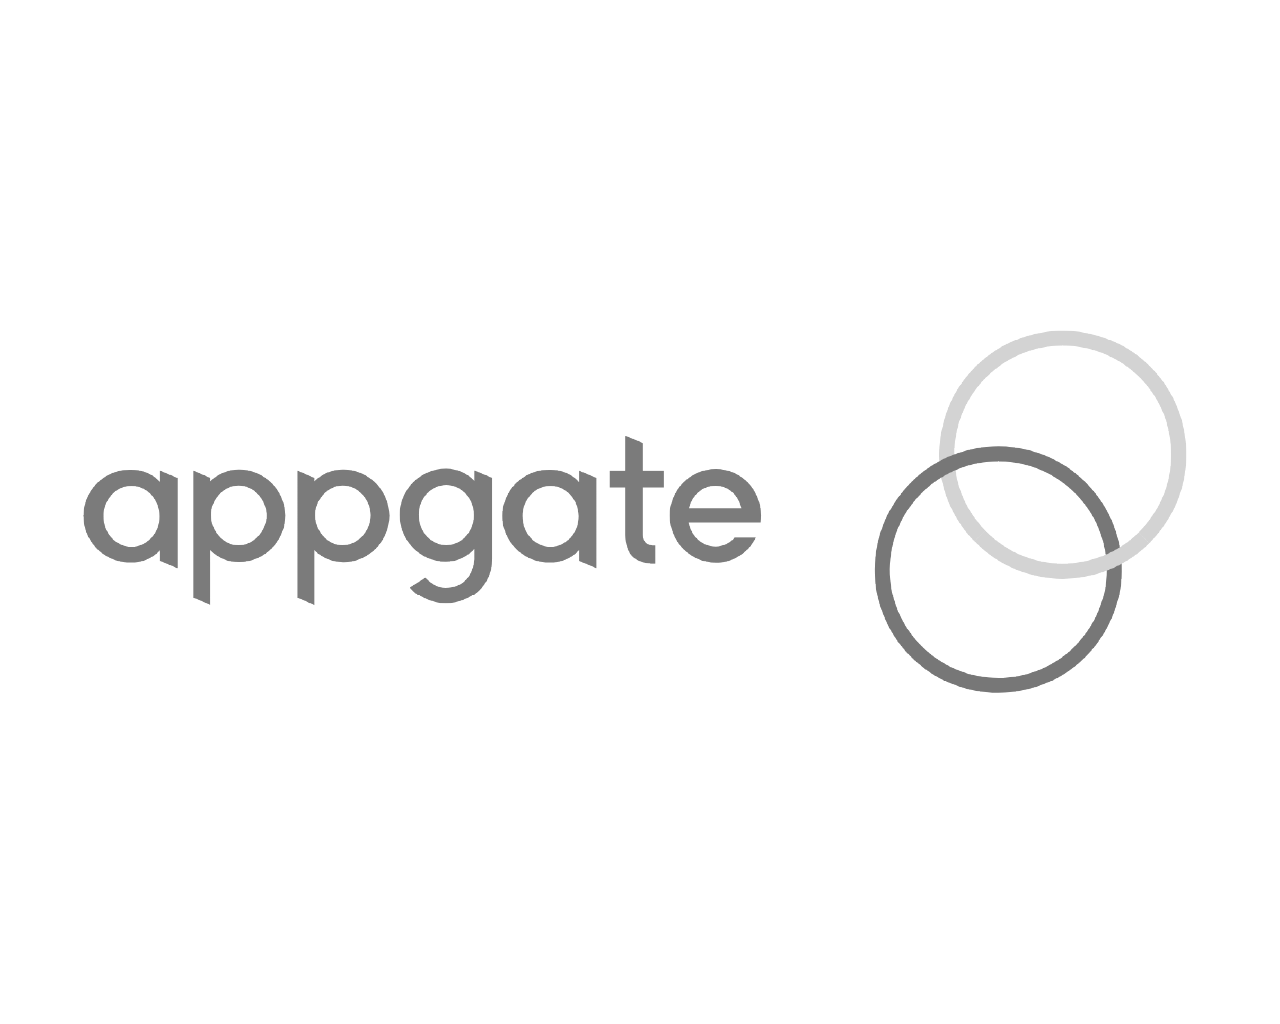 appgate logo bw